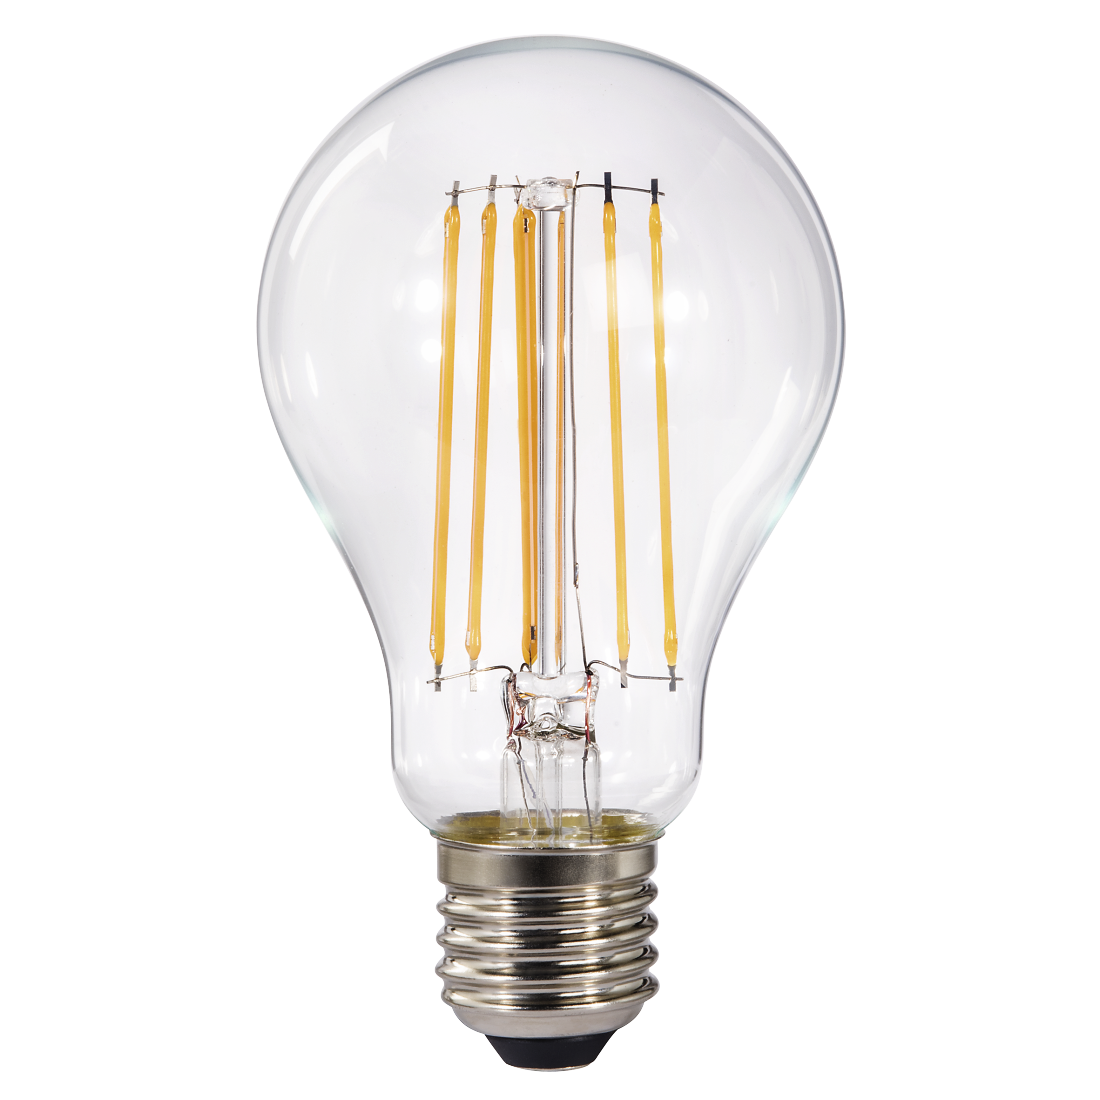 abx High-Res Image - Xavax, Ampoule filament LED, E27, 1521lm rempl. lpe à incand. 100 W, blc chd